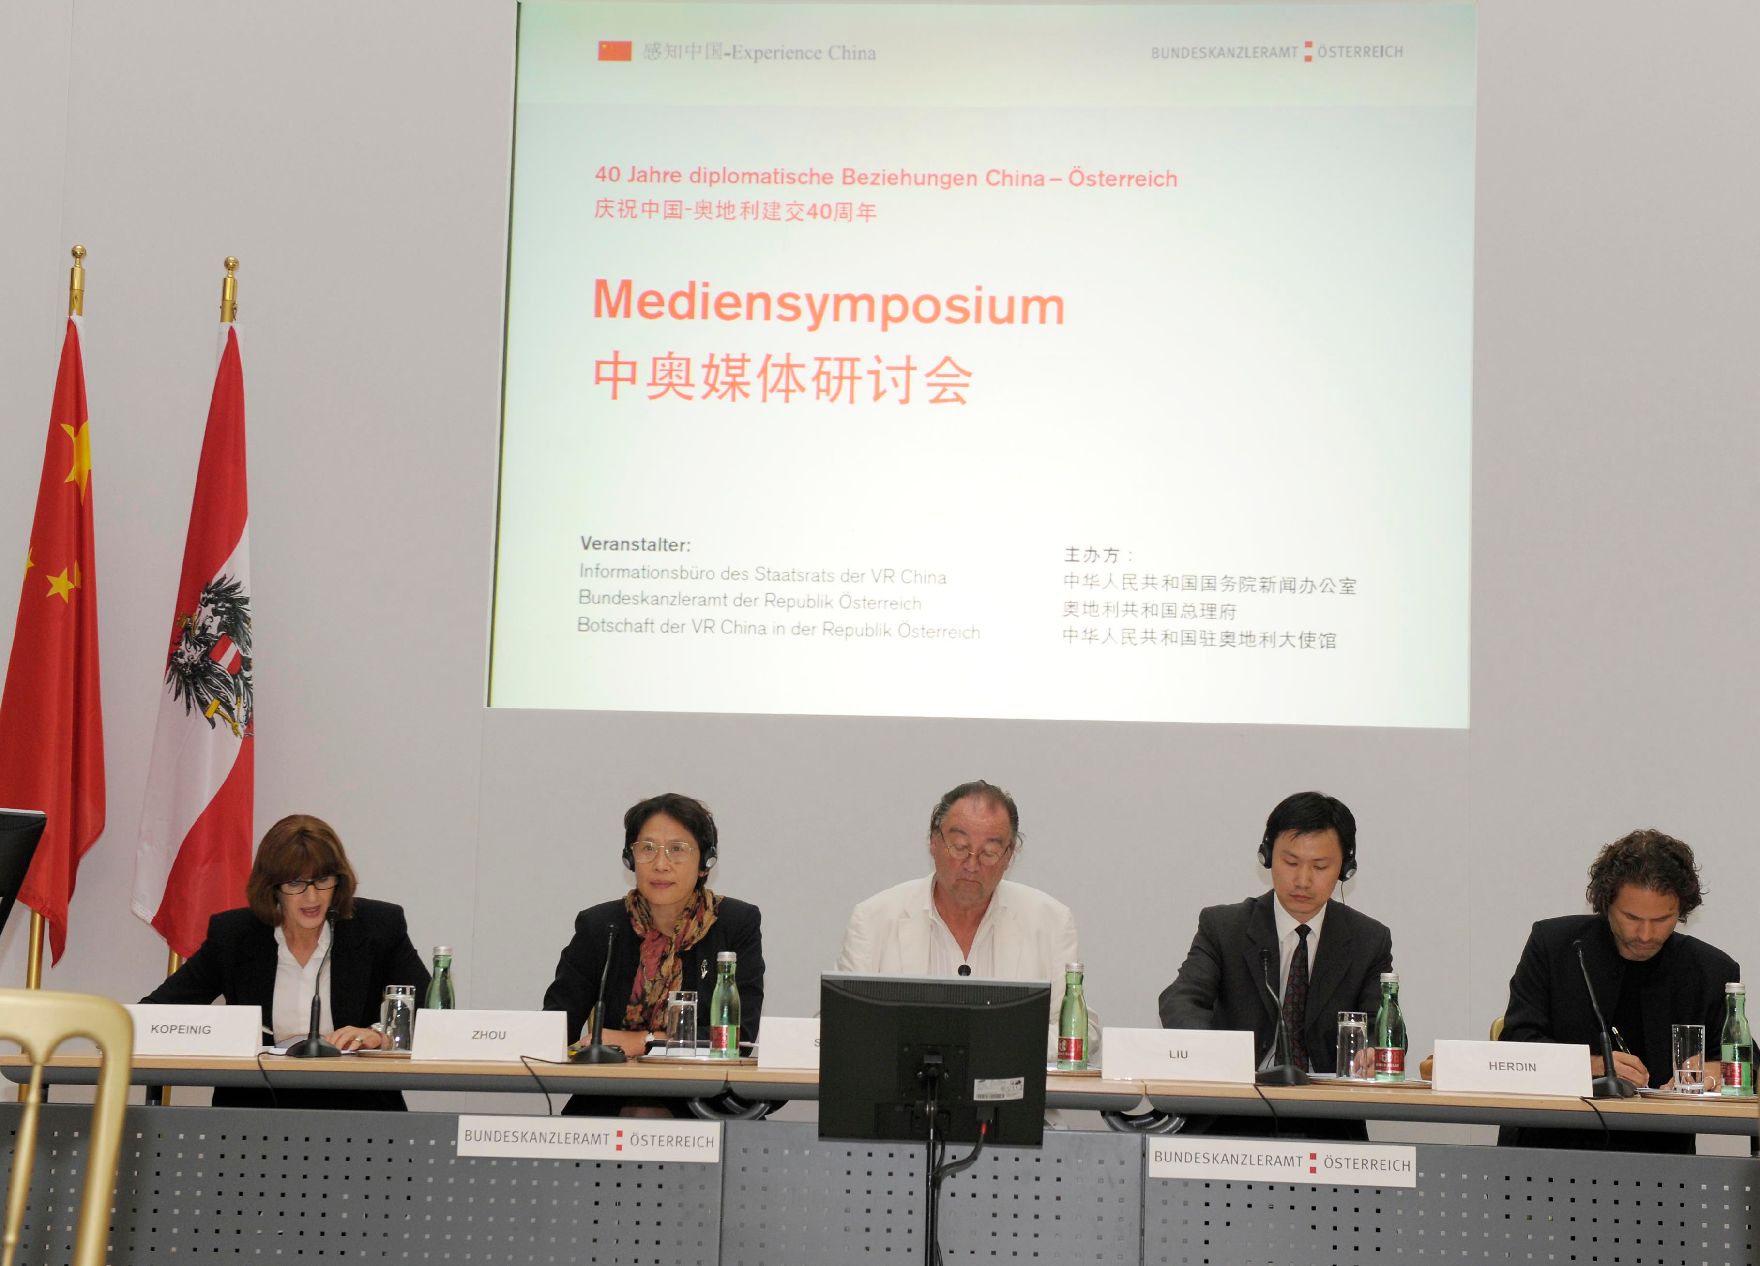 Am 14. September 2011 fand das Mediensymposium Österreich-China in Wien statt. Im Bild (v.l.n.r.) Margaretha Kopeinig (Moderation), Zhou Hong (Europa-Institut der chinesischen Akademie), Gerfried Sperl (International Press Institute), Liu Mingli (Institut für moderne internationale Beziehungen), Thomas Herdin (Universität Salzburg).